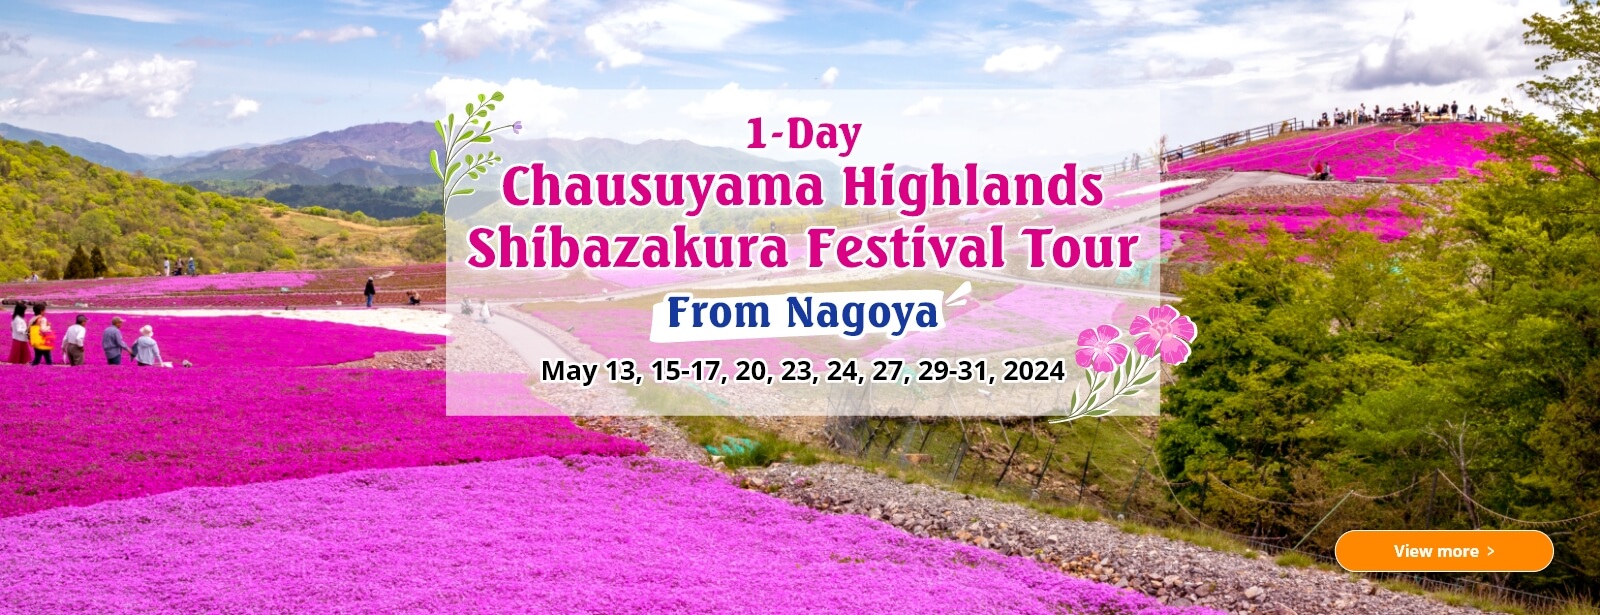 1-Day Chausuyama Highlands Shibazakura Festival Tour from Nagoya